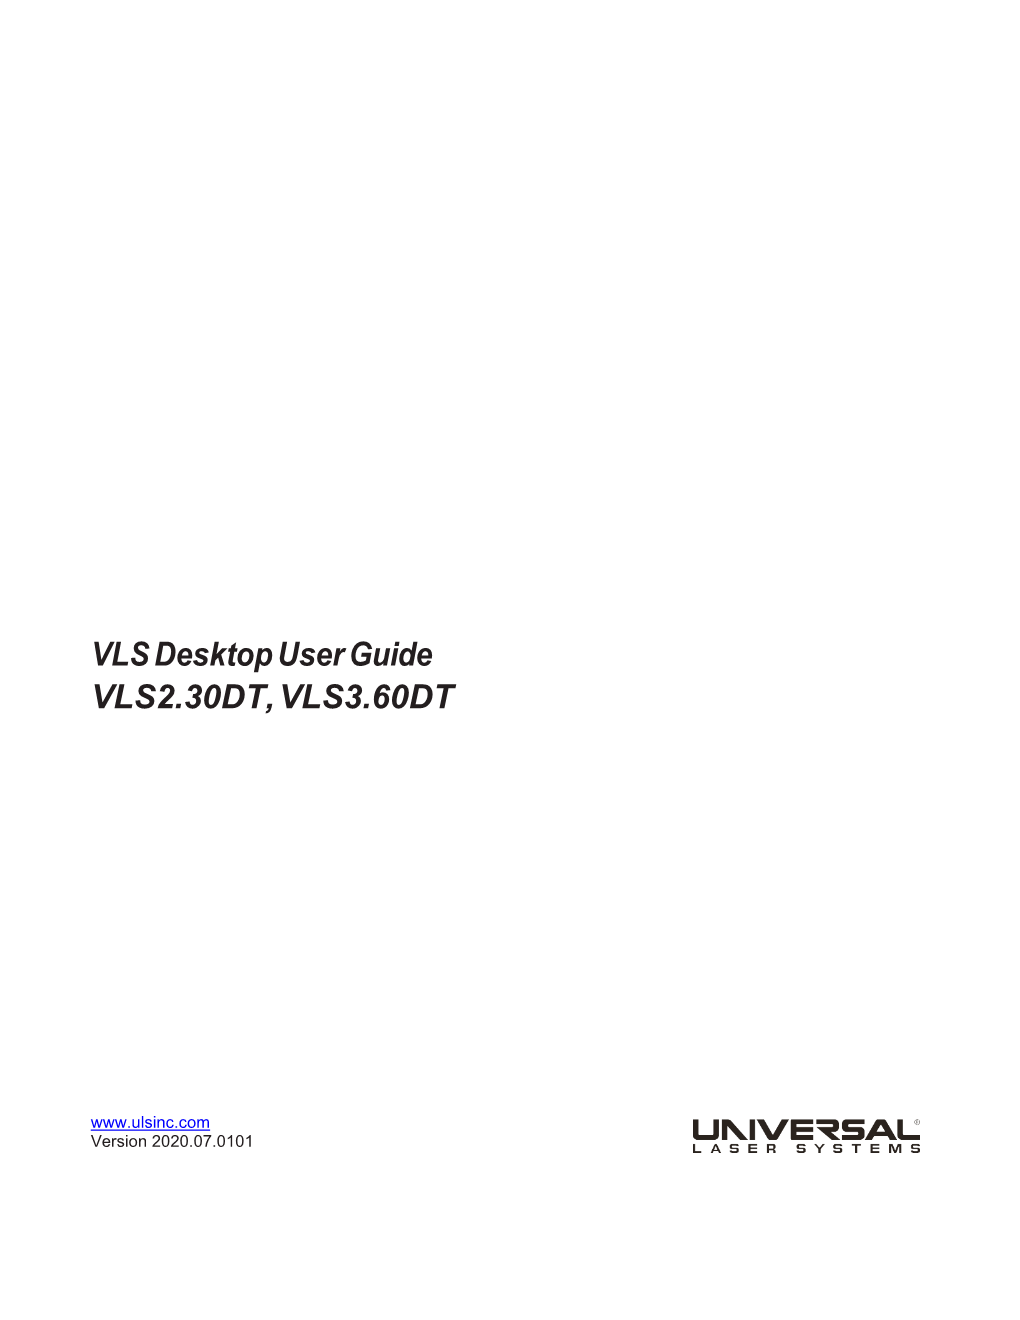 VLS Desktop User Guide VLS2.30DT, VLS3.60DT